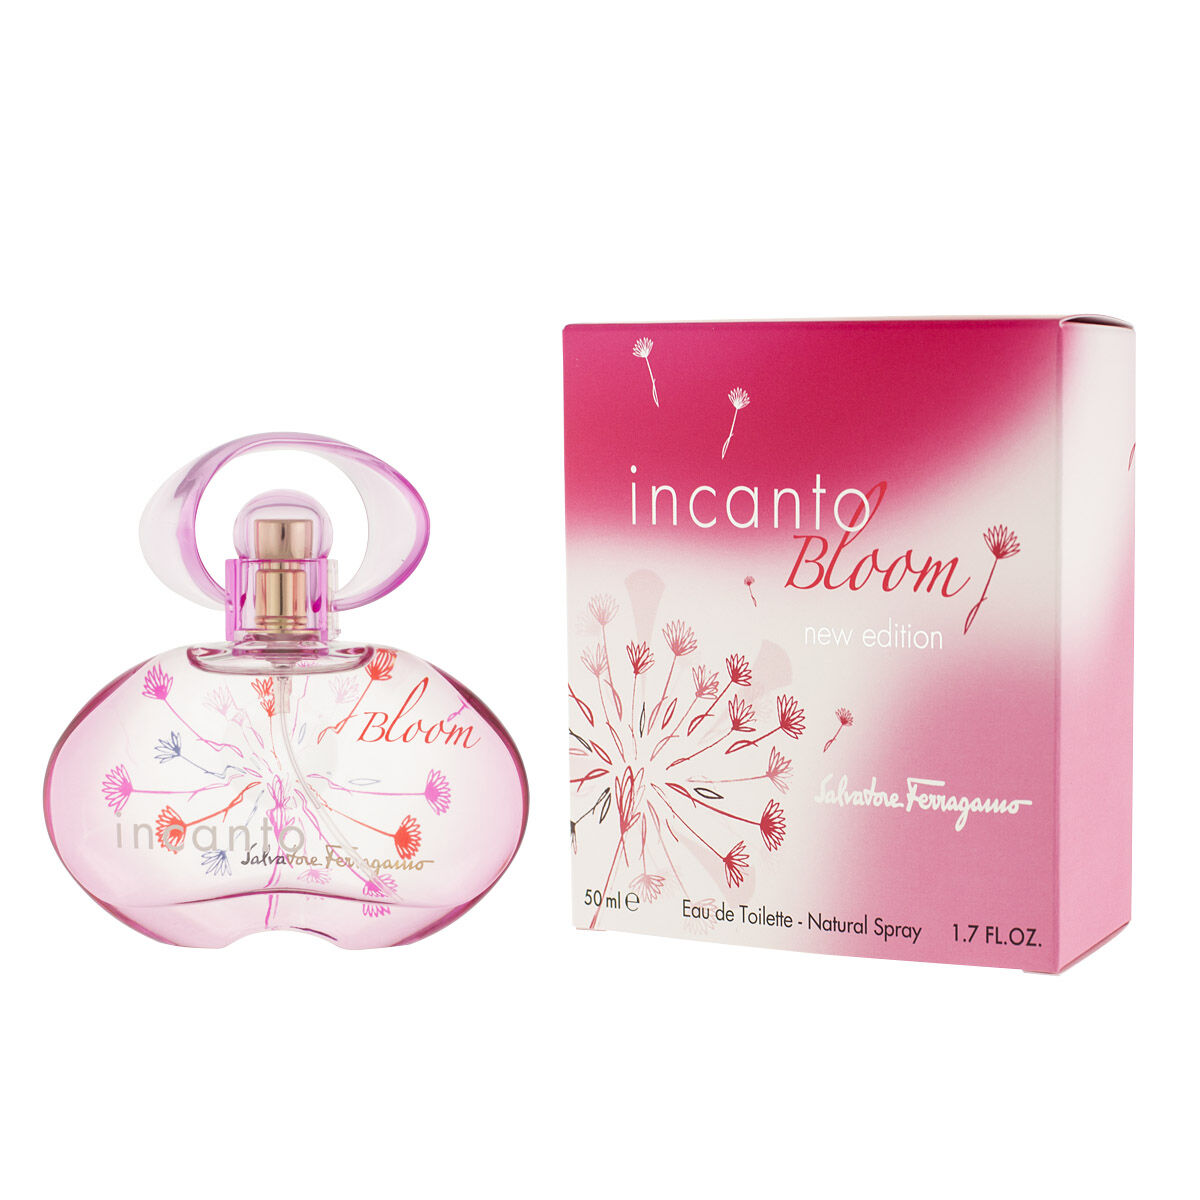 Parfum Femme Salvatore Ferragamo EDT Incanto Bloom (50 ml)